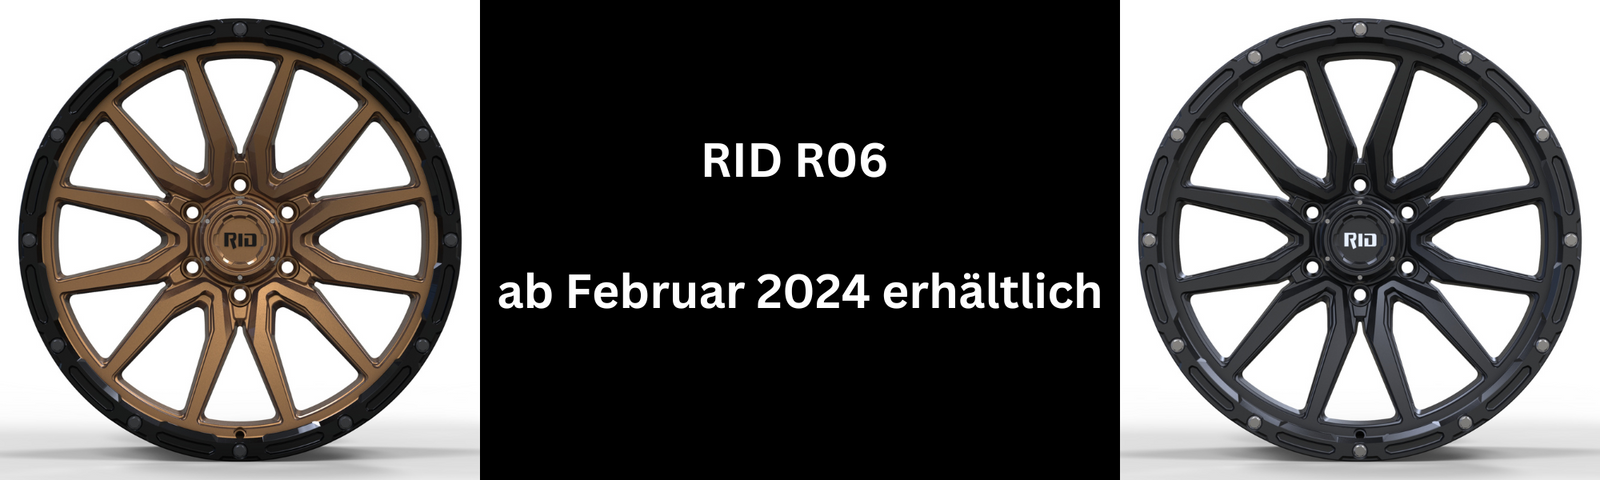 Entdecken Sie die RID R06 Felgen: Stil trifft Leistung in 20 Zoll